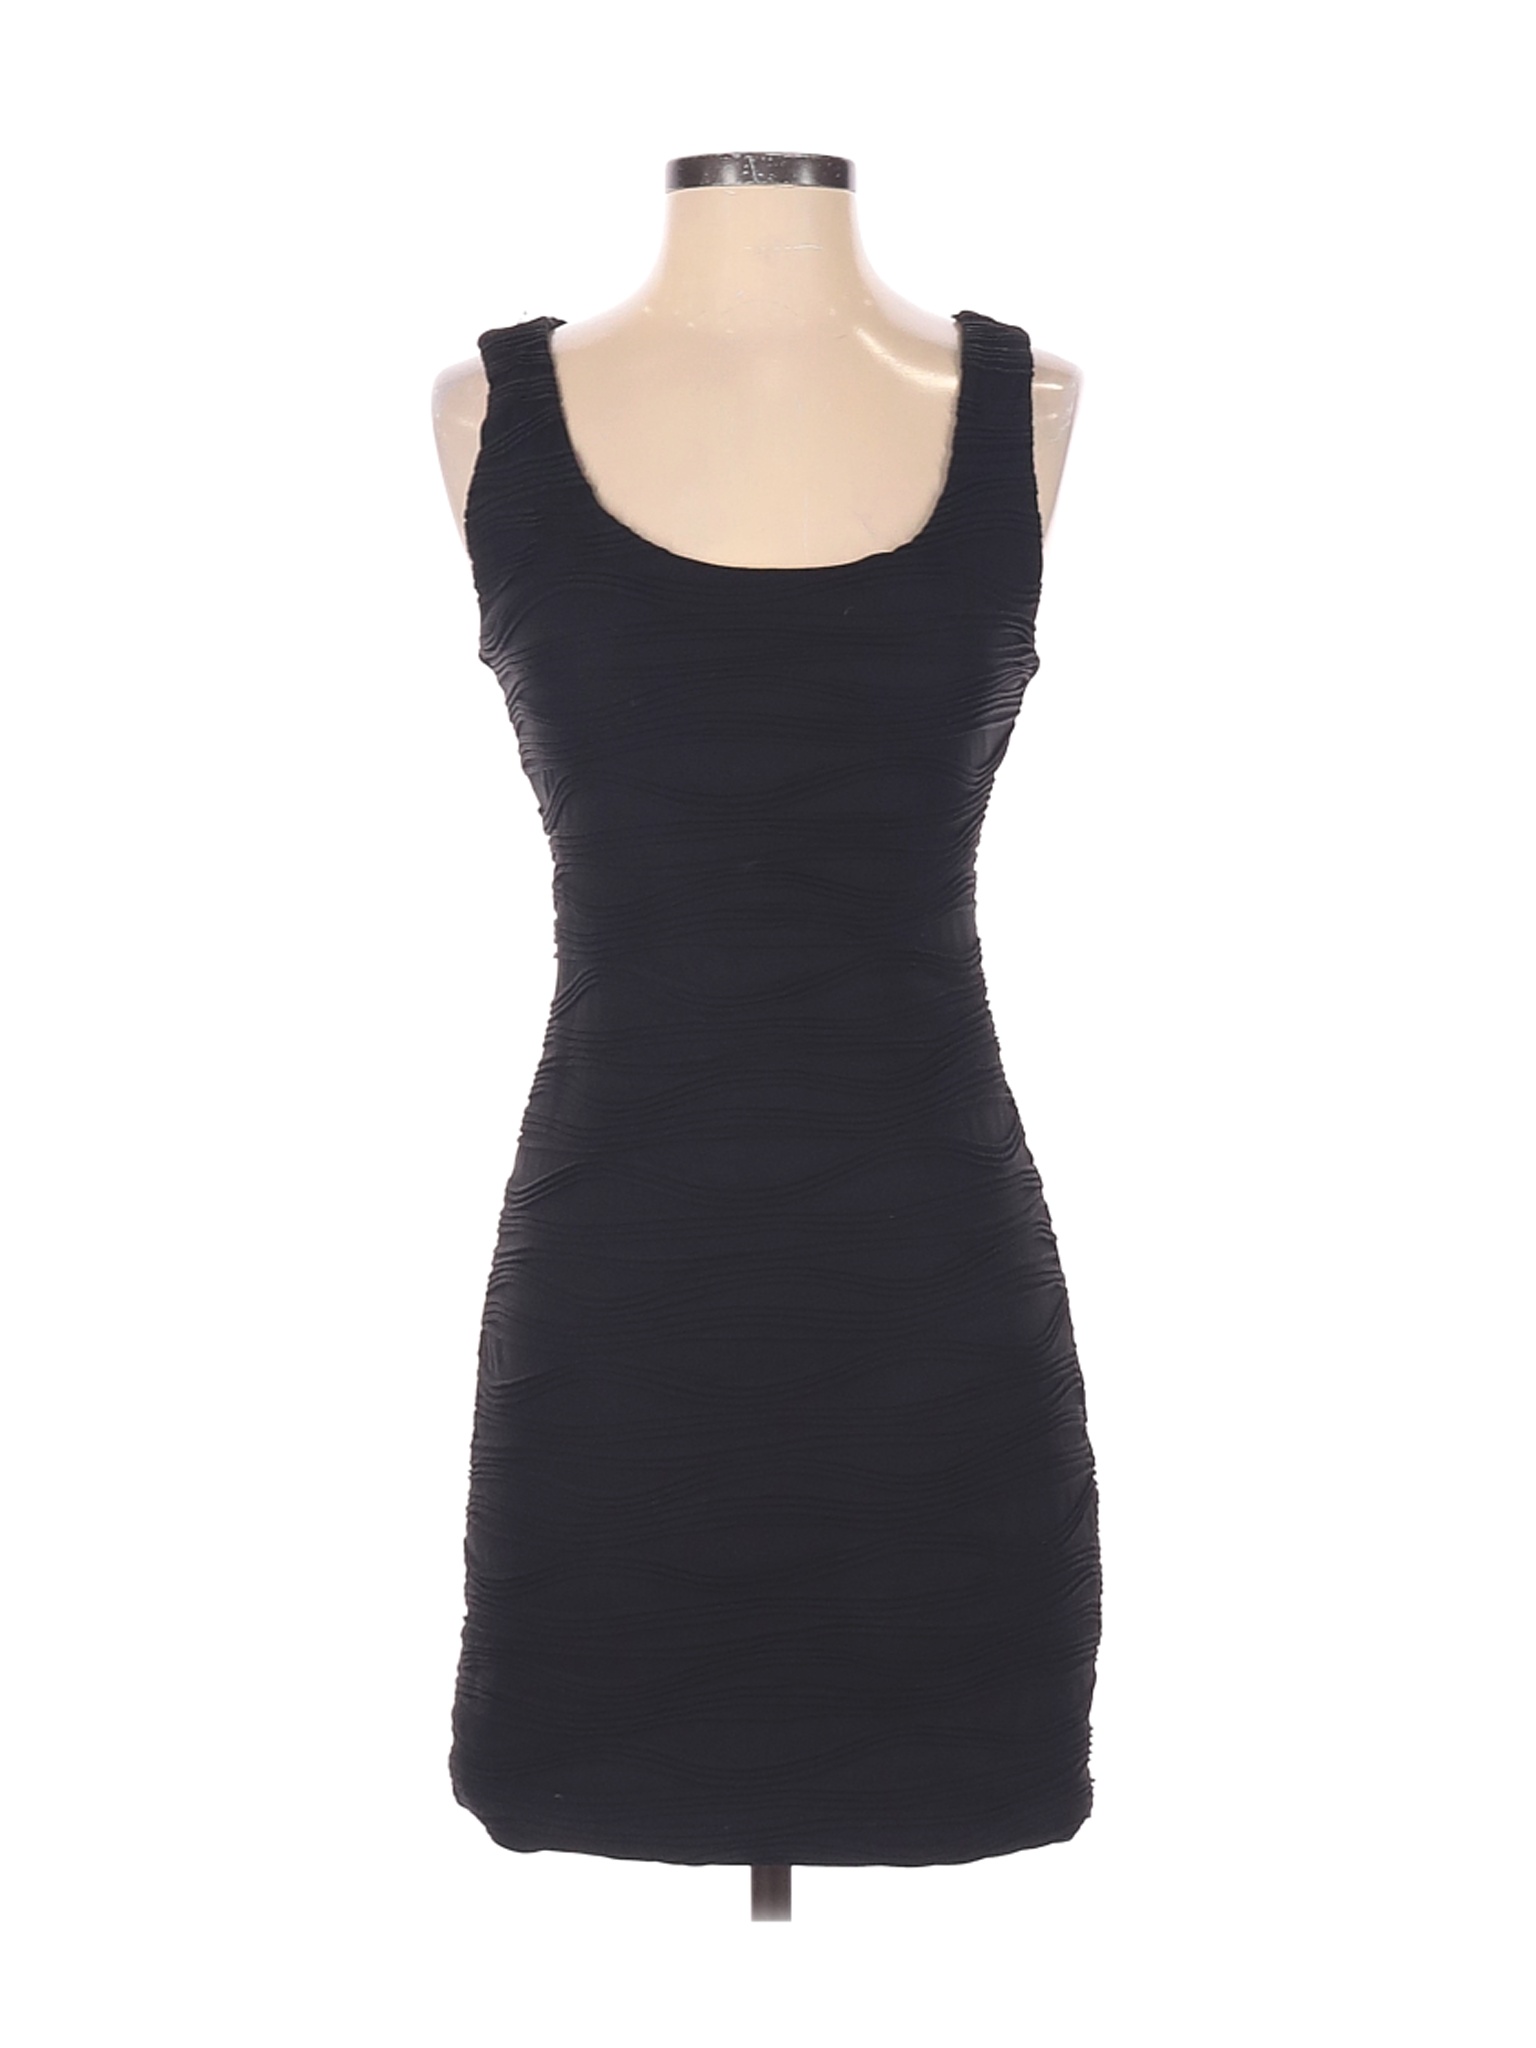 Forever 21 Women Black Cocktail Dress S | eBay